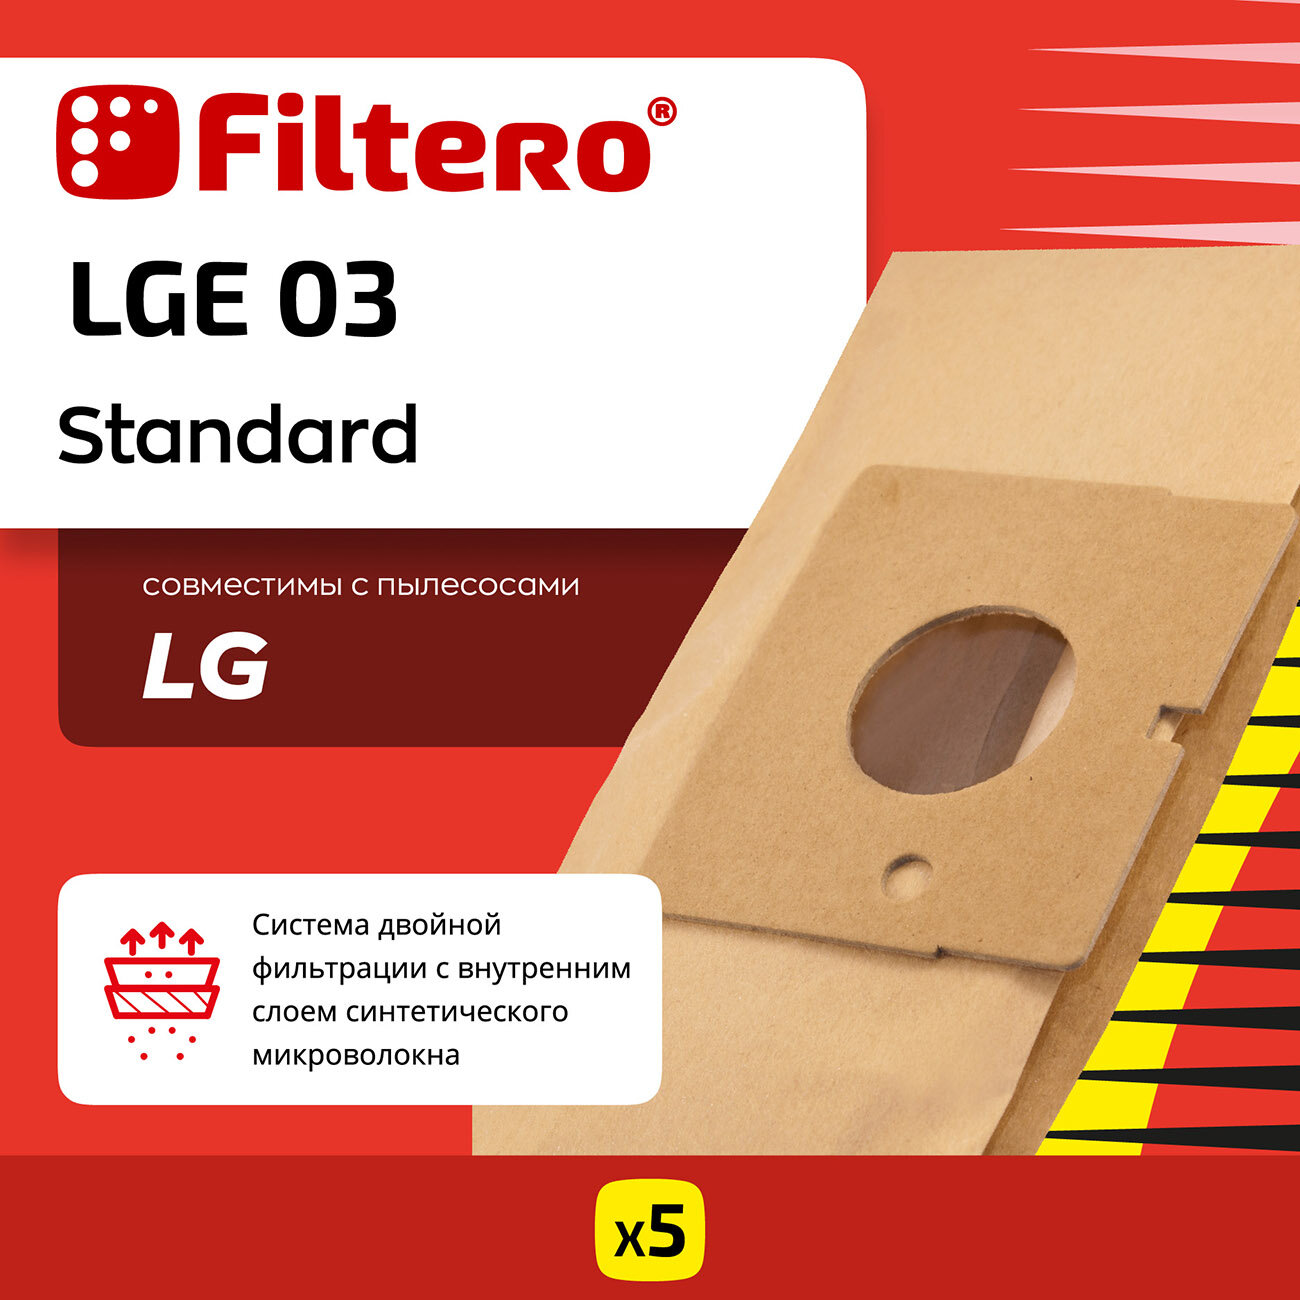 Пылесборники FILTERO LGE 03 Standard, двухслойные, 5 шт., для пылесосов LG - фото №3